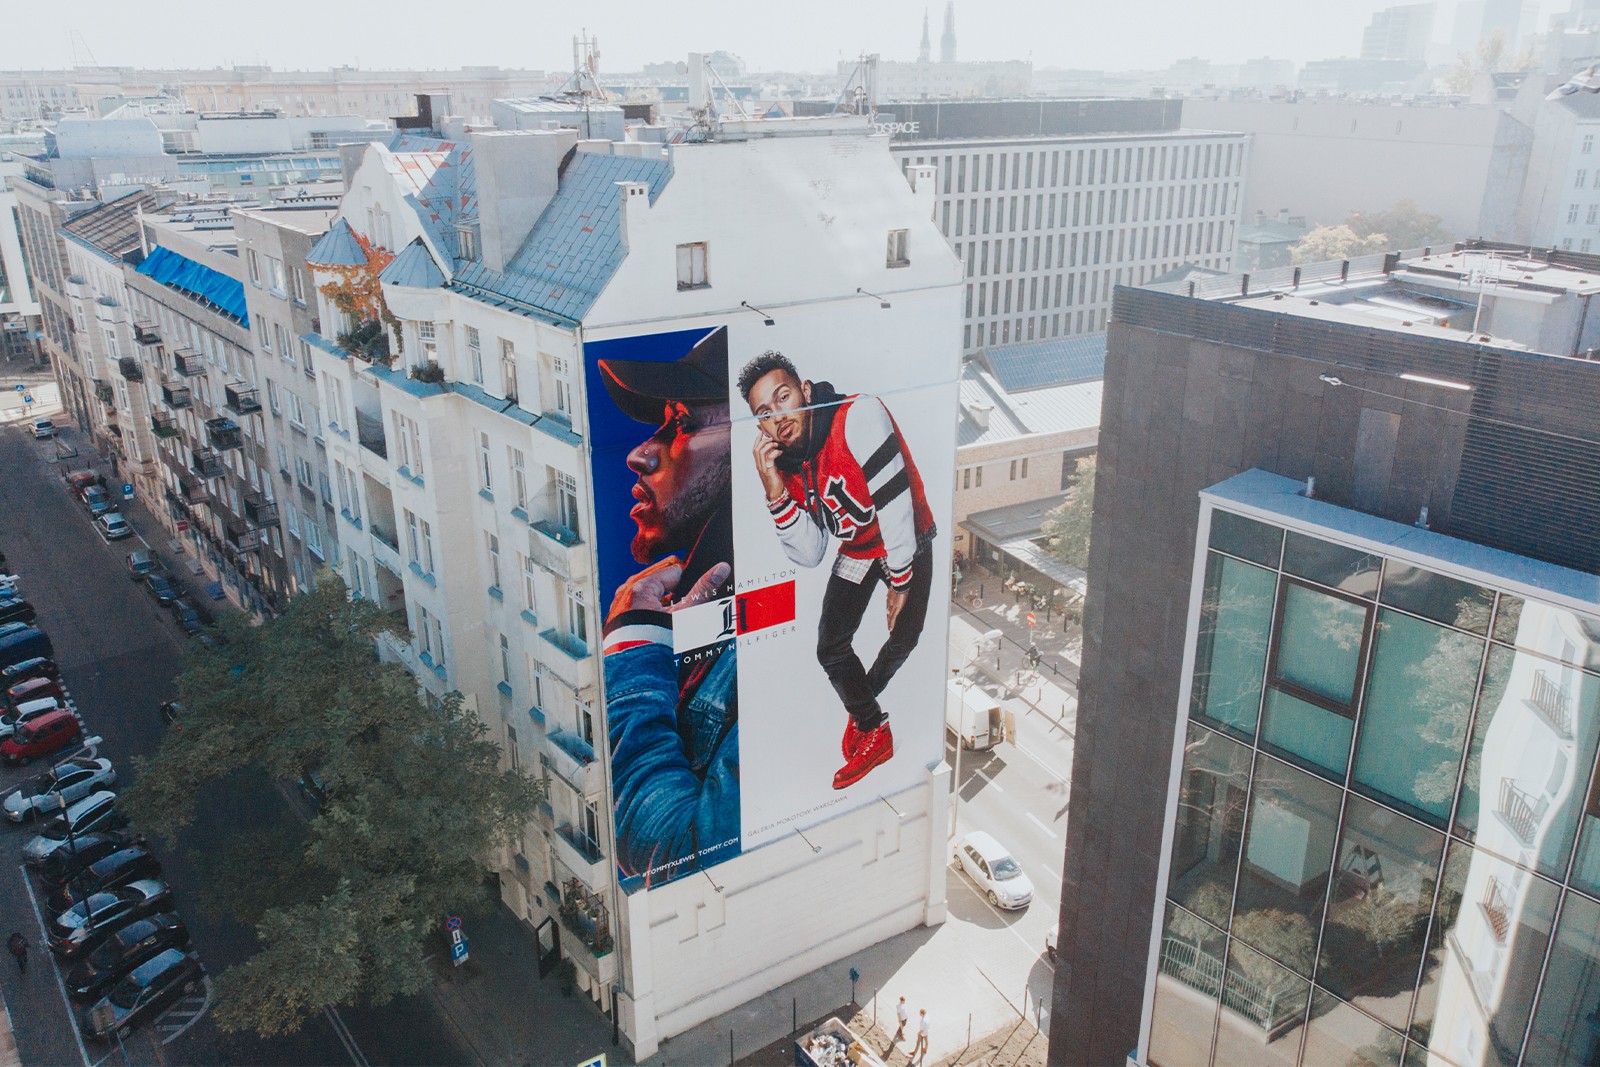 Mural reklamowy dla marki Tommy Hilfiger w Warszawie | TommyXLewis | Portfolio